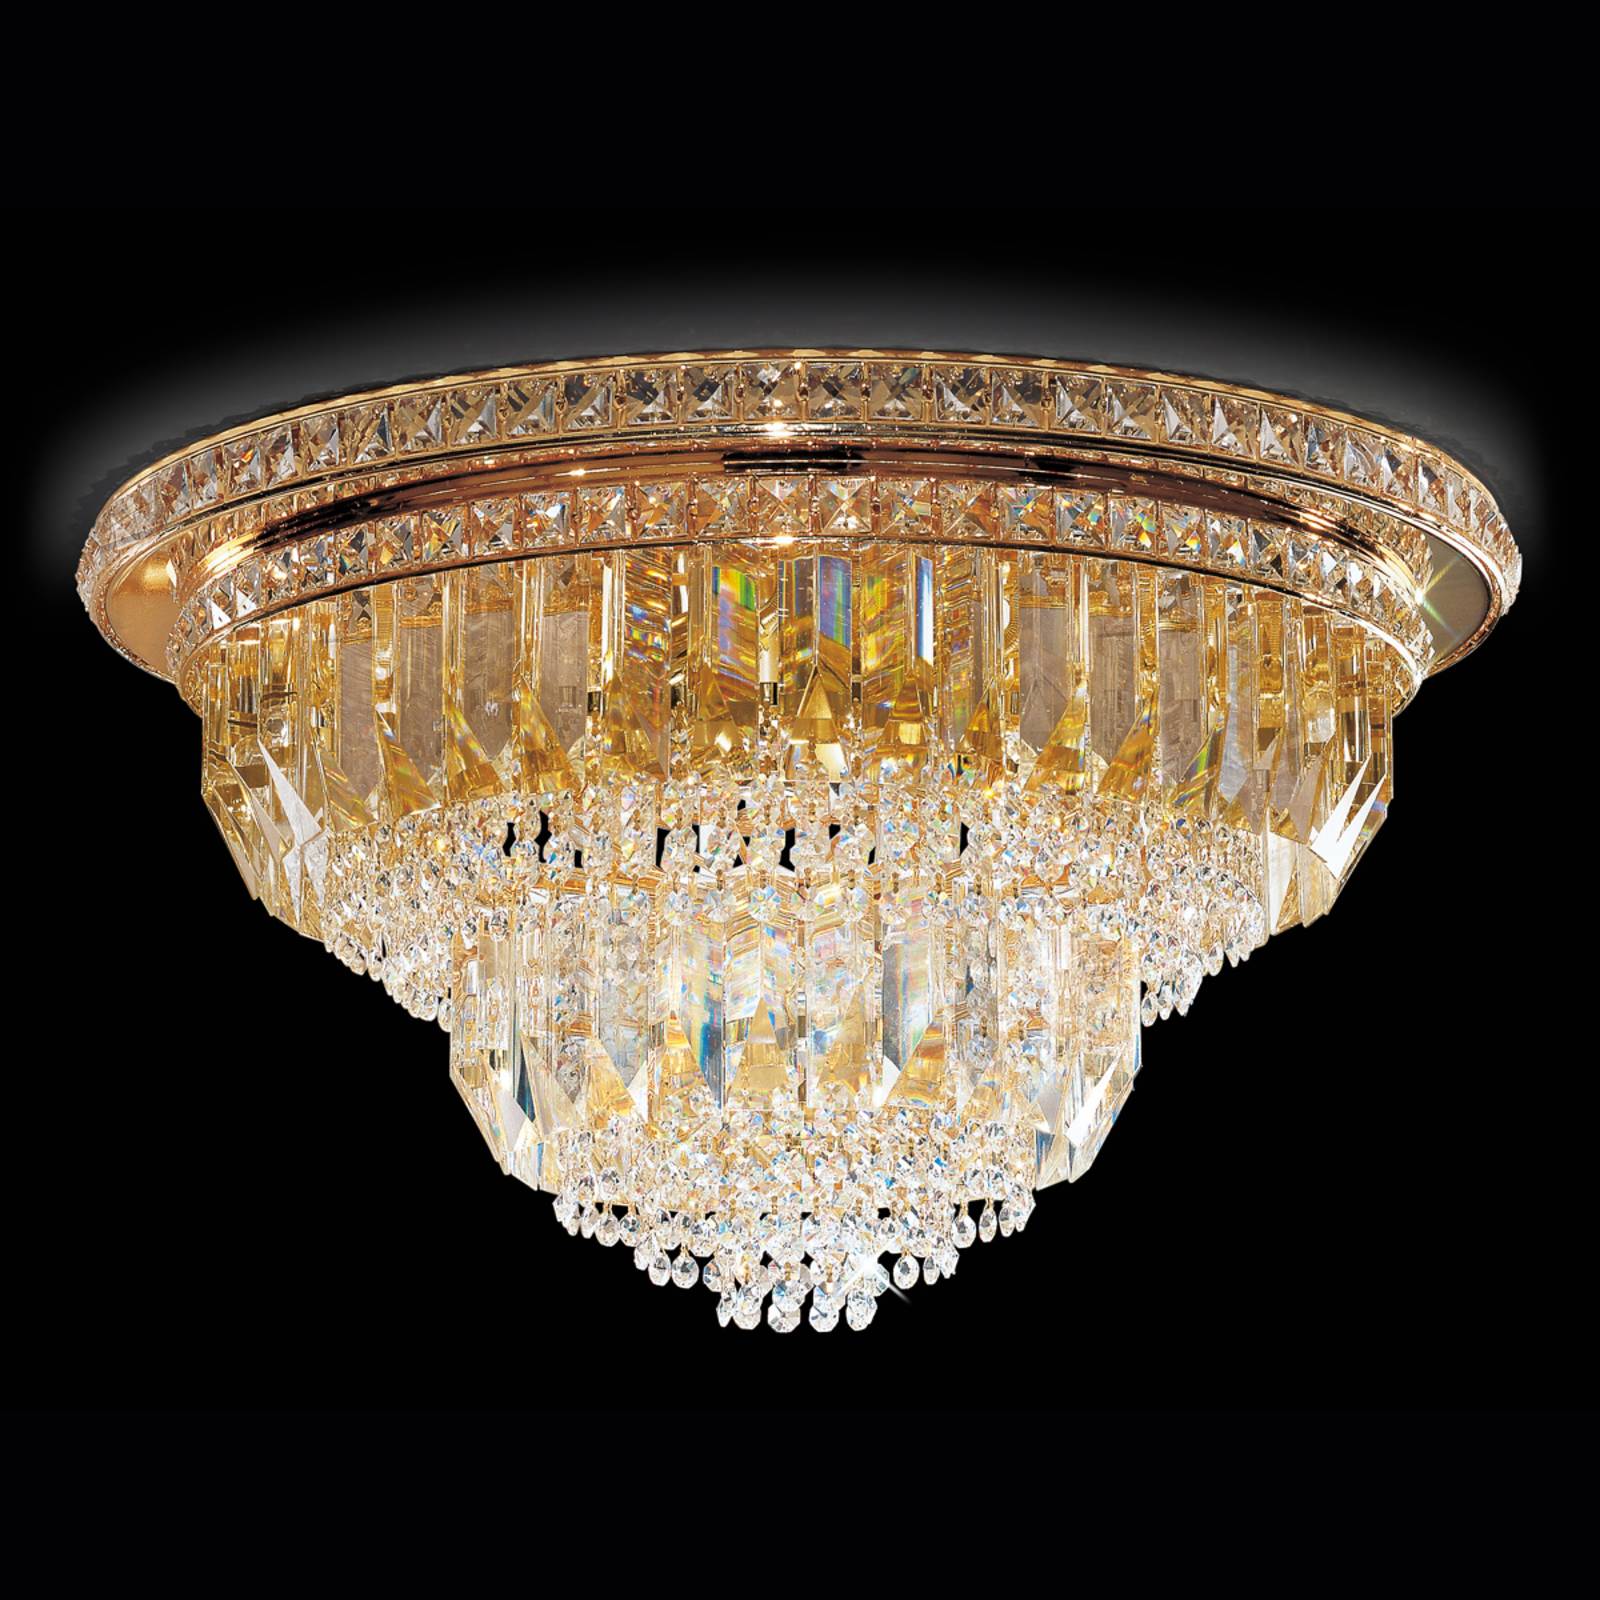 Patrizia volpato cristalli mennyezeti lámpa, 60cm, arany színben